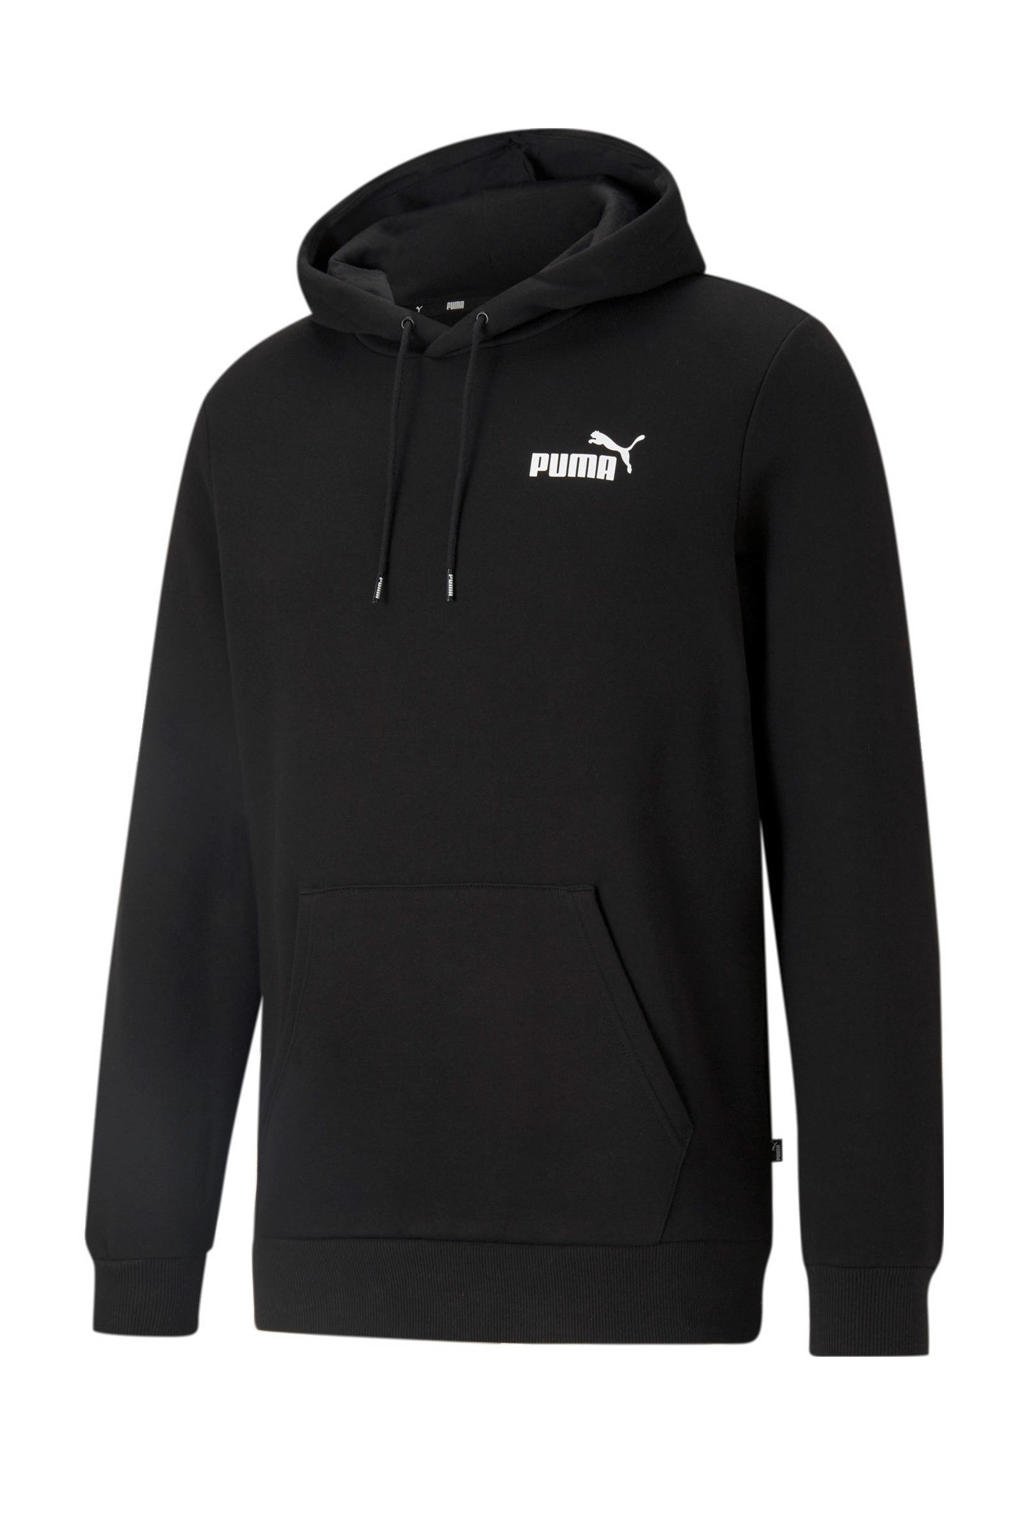 Zwarte heren Puma hoodie van polyester met logo dessin, lange mouwen, capuchon en geribde boorden